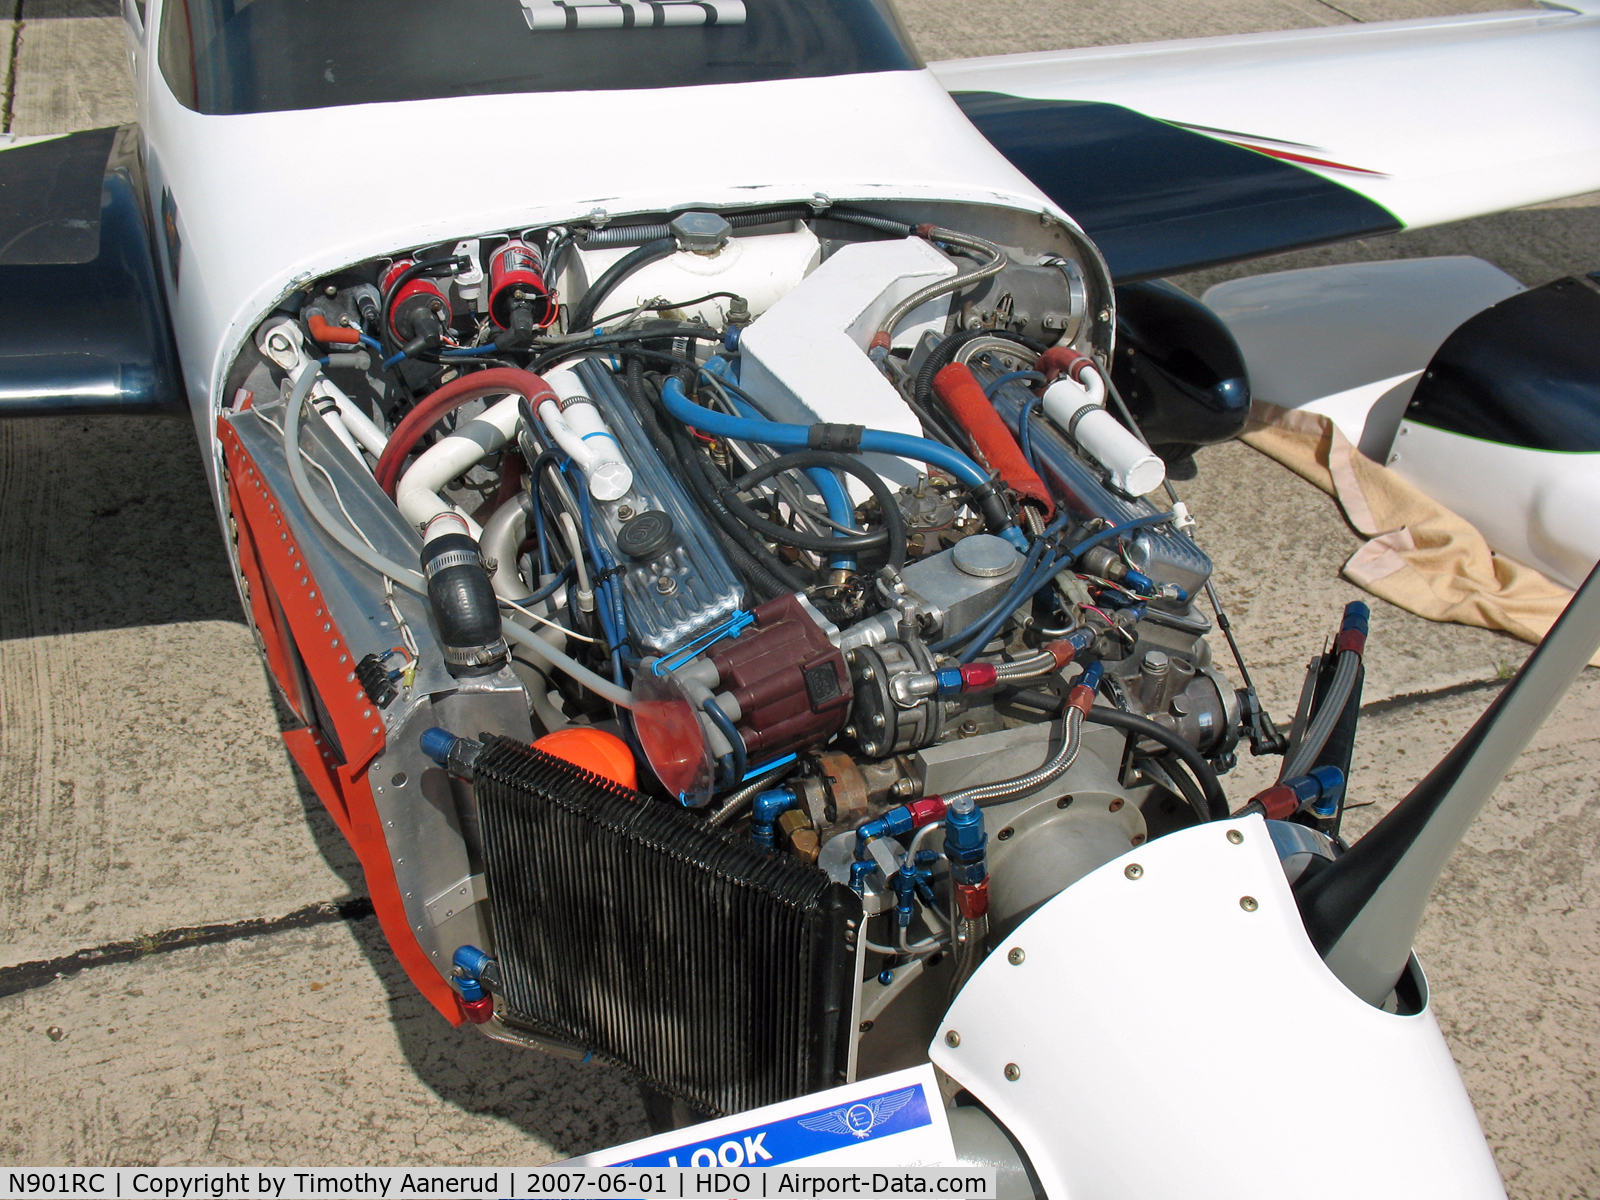 N901RC, 1989 Ward R C 350 HP C/N 015, The EAA Texas Fly-In, Chevy 400. destroyed in crash 2007-10-18, no fatalities.